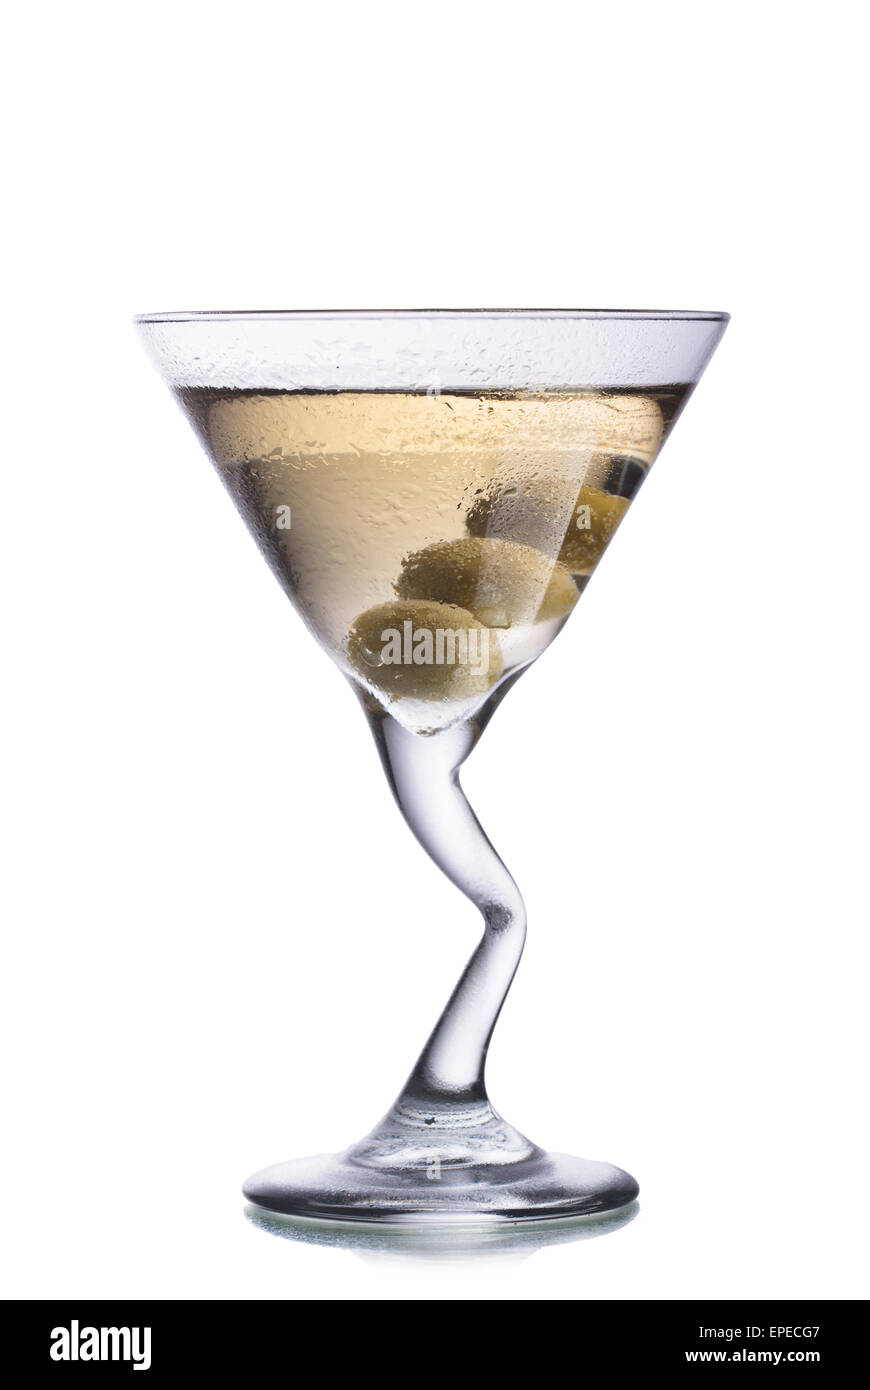 Dirty Martini bebidas cóctel con aceitunas en el interior del cristal con la pierna doblada Foto de stock